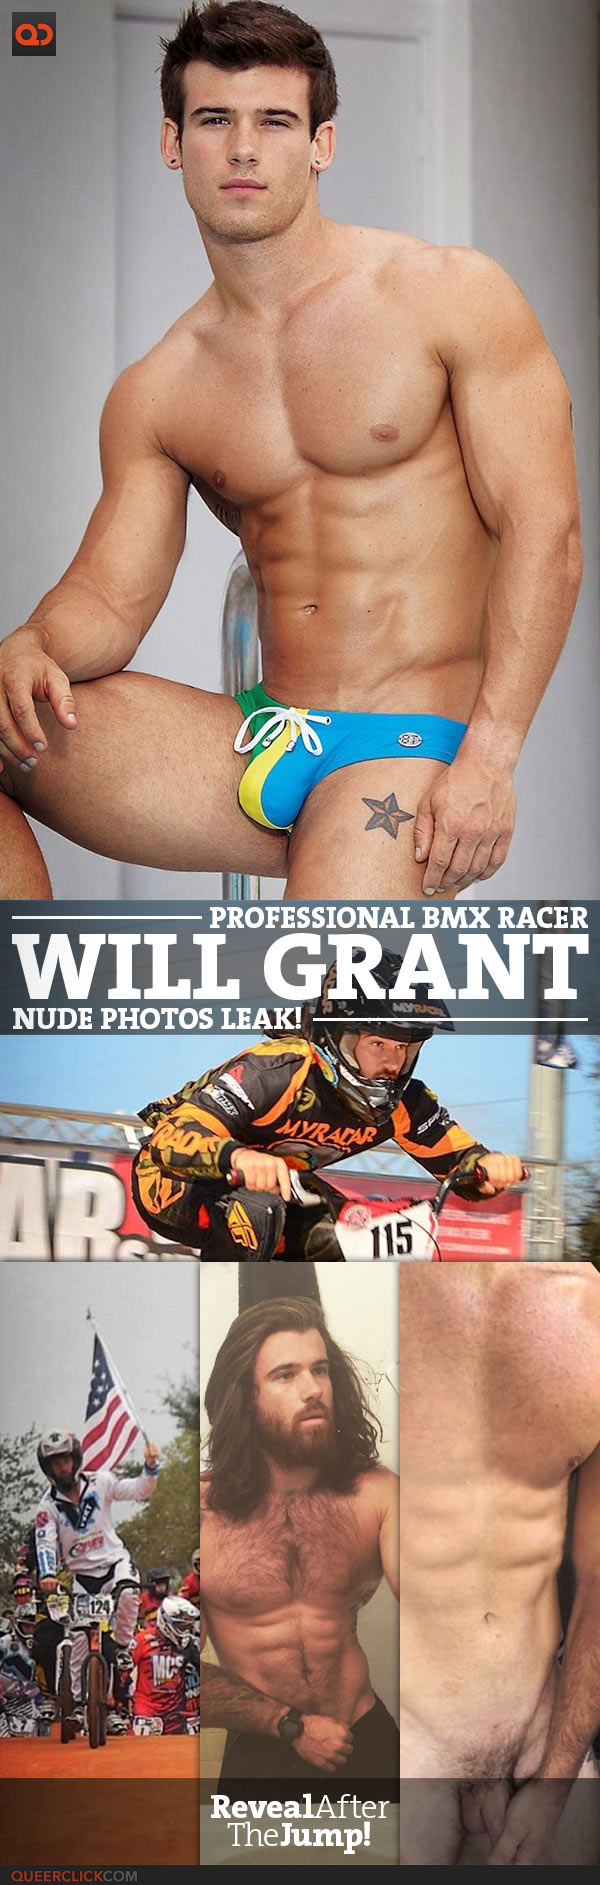 Will grant nude